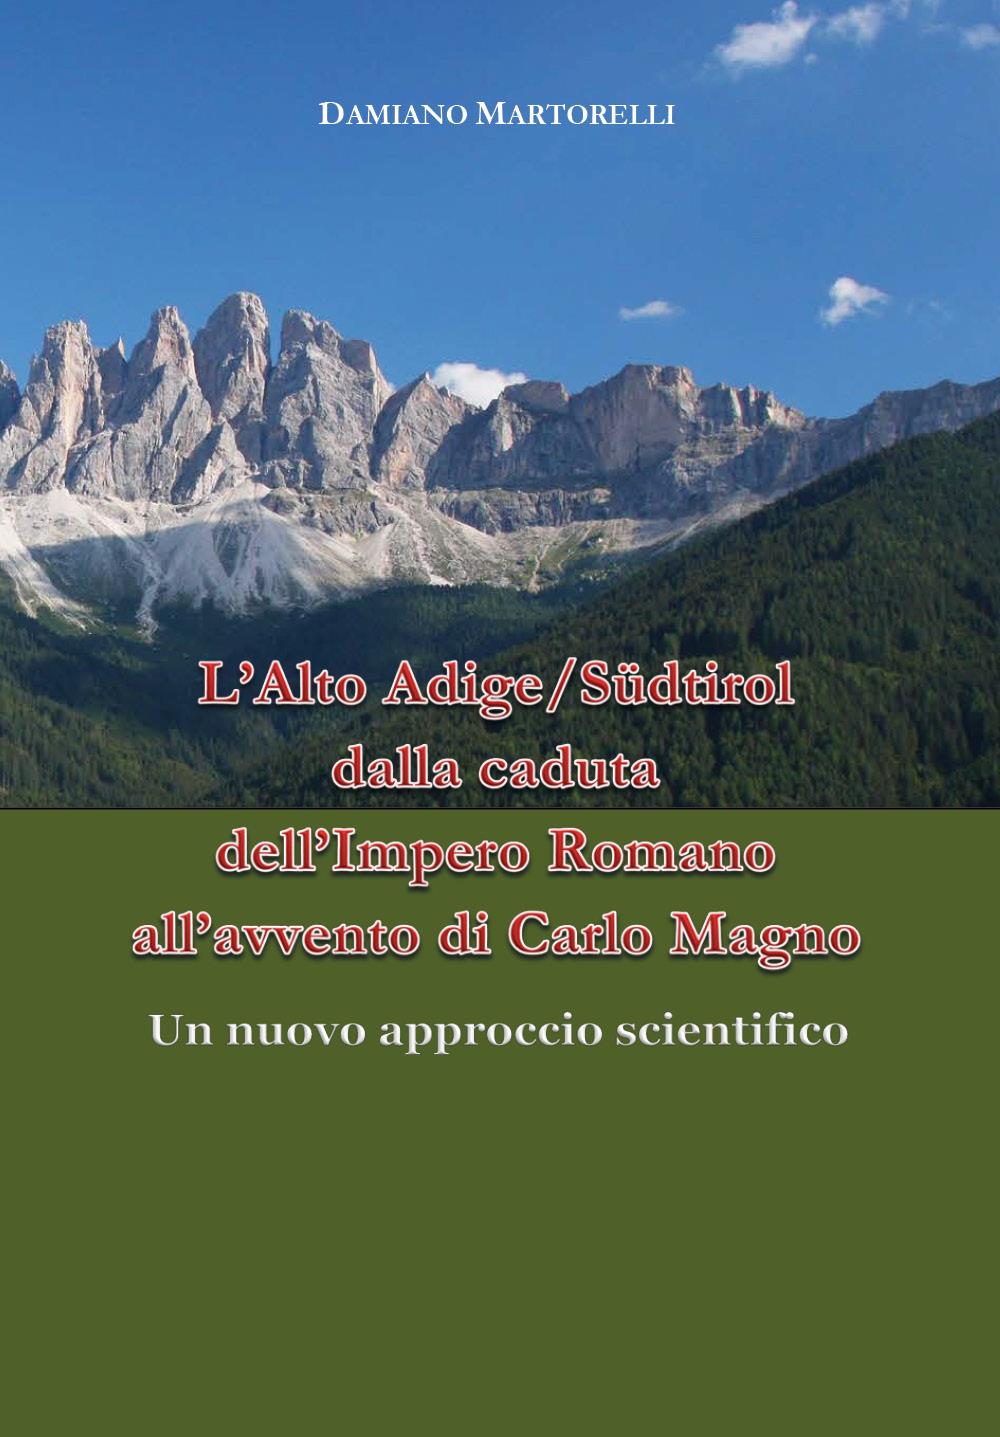 L’Alto Adige/Südtirol dalla caduta dell’Impero Romano all’avvento di Carlo Magno (V-VIII secolo). Un nuovo approccio scientifico